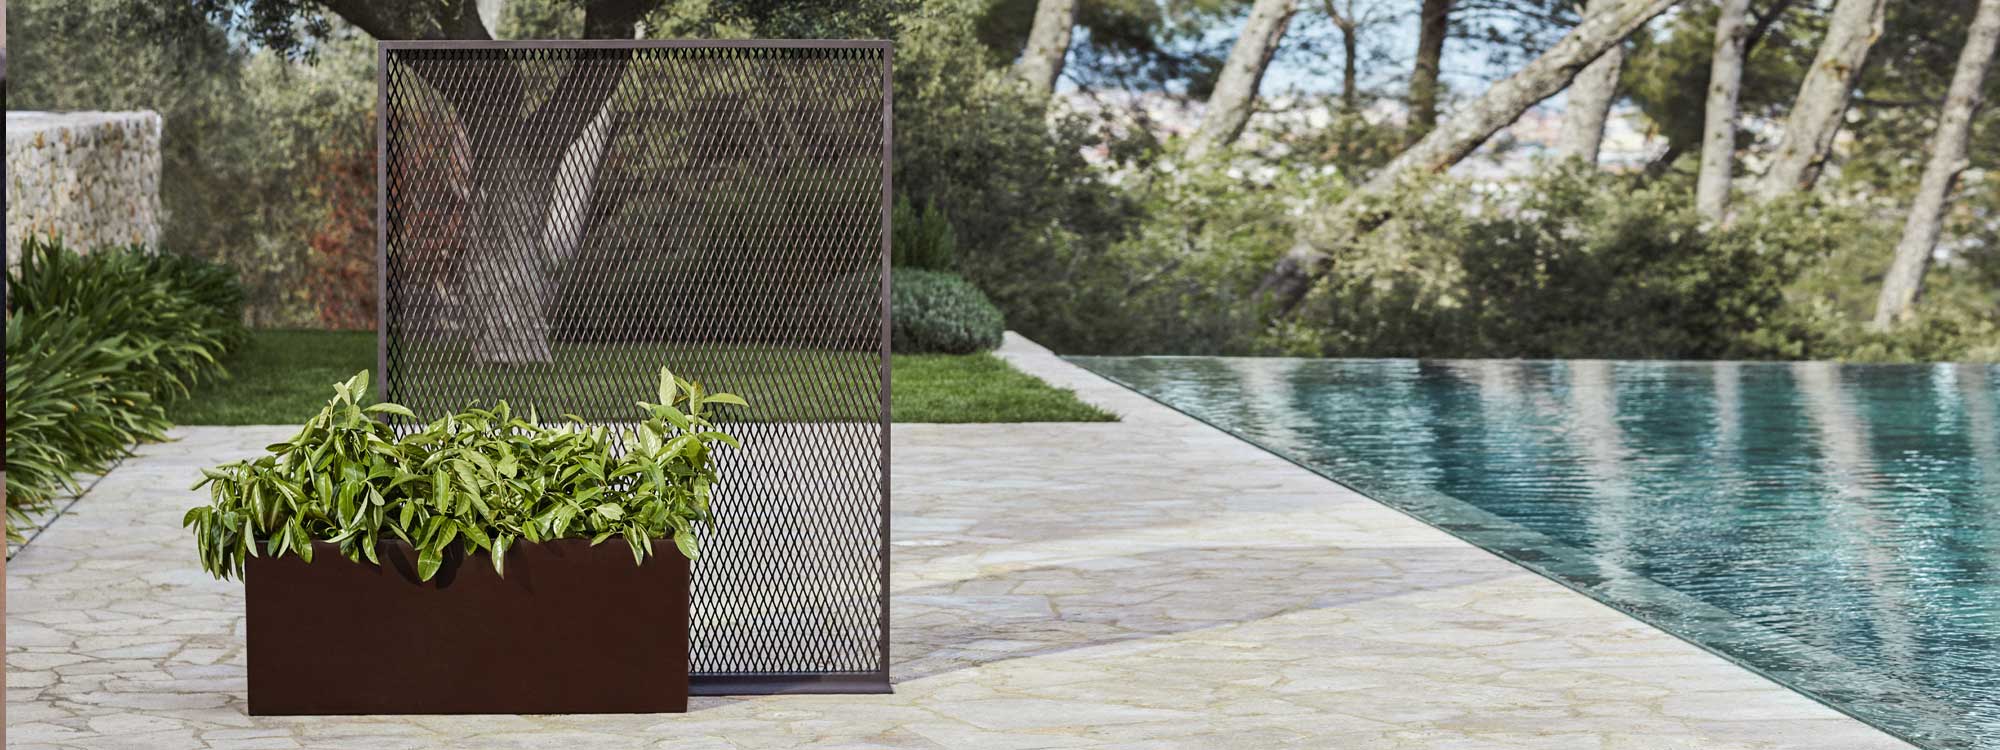 Image of The Factory mesh garden panel designed by Ramon Esteve for Vondom, Spain.